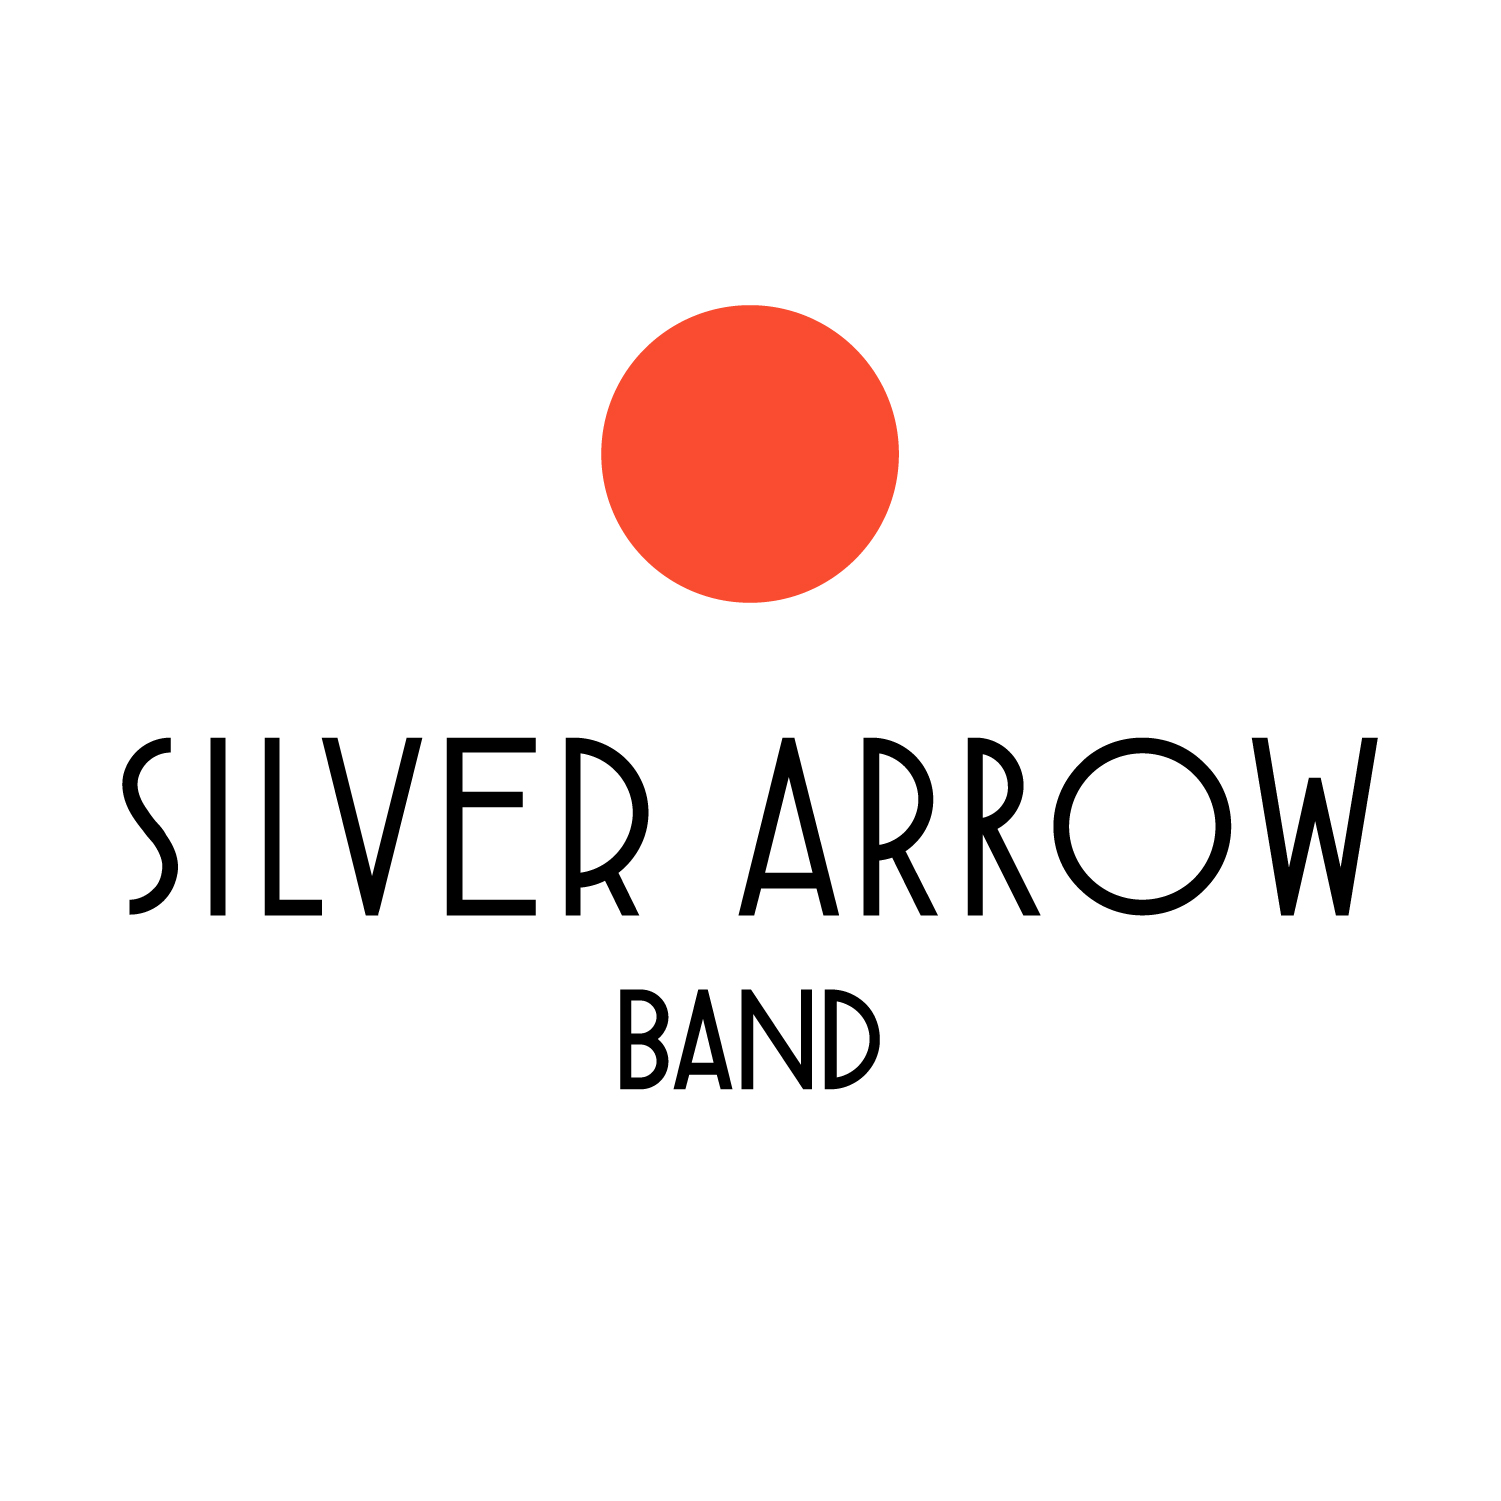 Silver Arrow Band logo